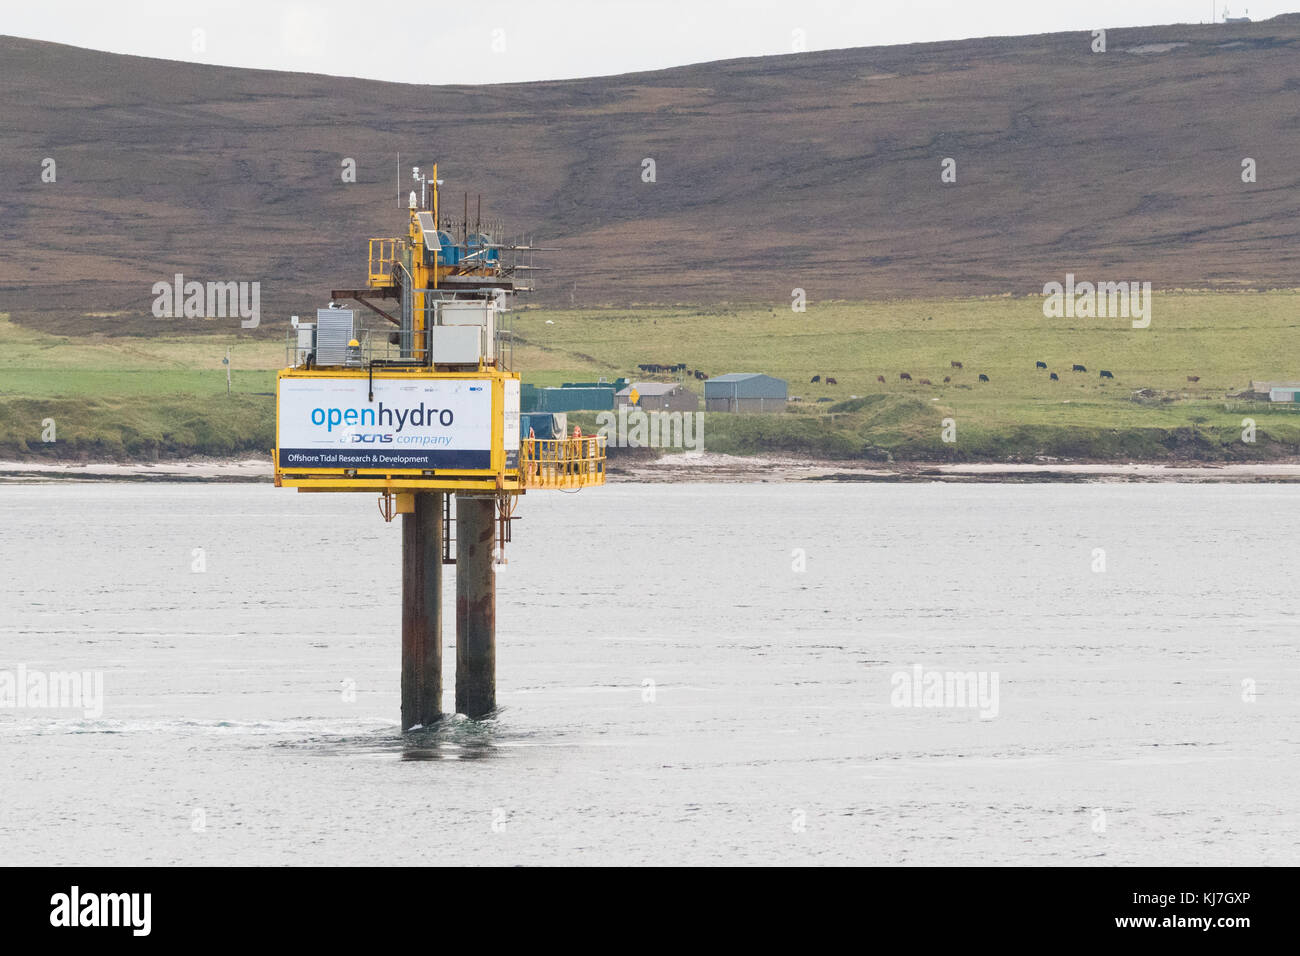 Sito di prova dell'energia di marea EMEC - collaudo delle turbine di marea in condizioni di mare reale per openidro, Fall of Warness, isola di Eday, Orkney, Scozia, REGNO UNITO Foto Stock